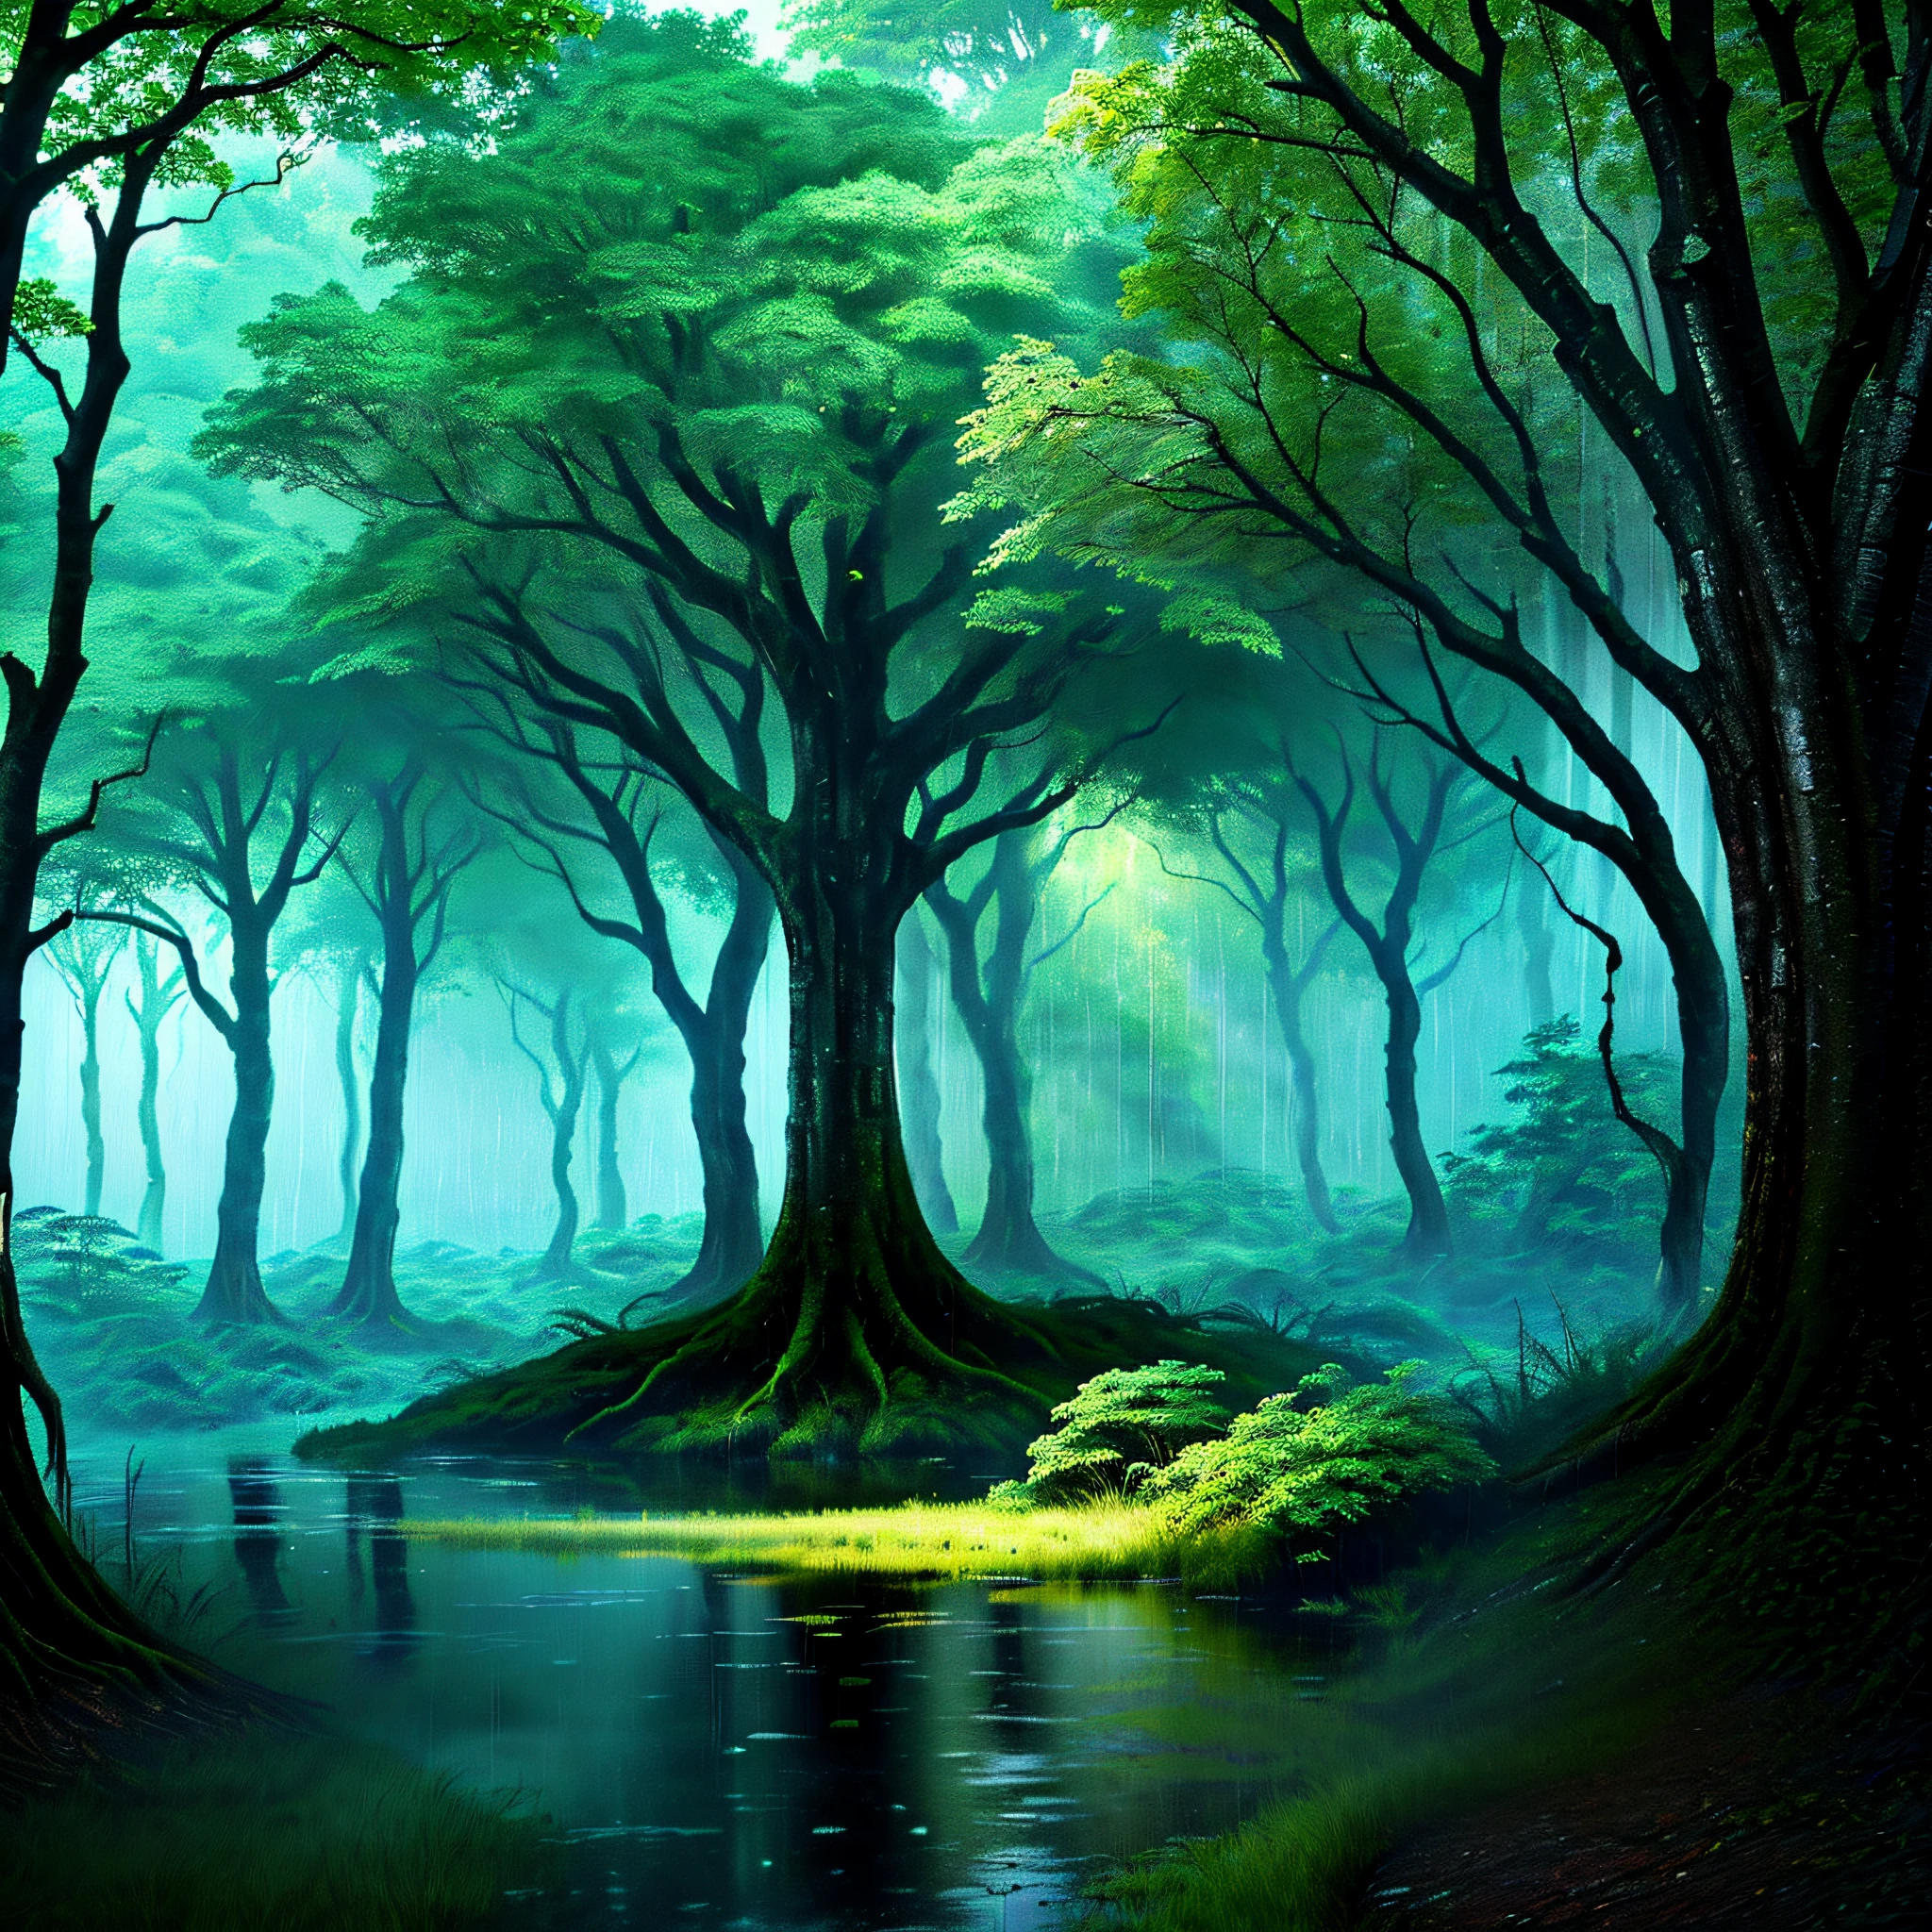 добавьте дождь на изображение и сохраните лес в зеленоватом цвете